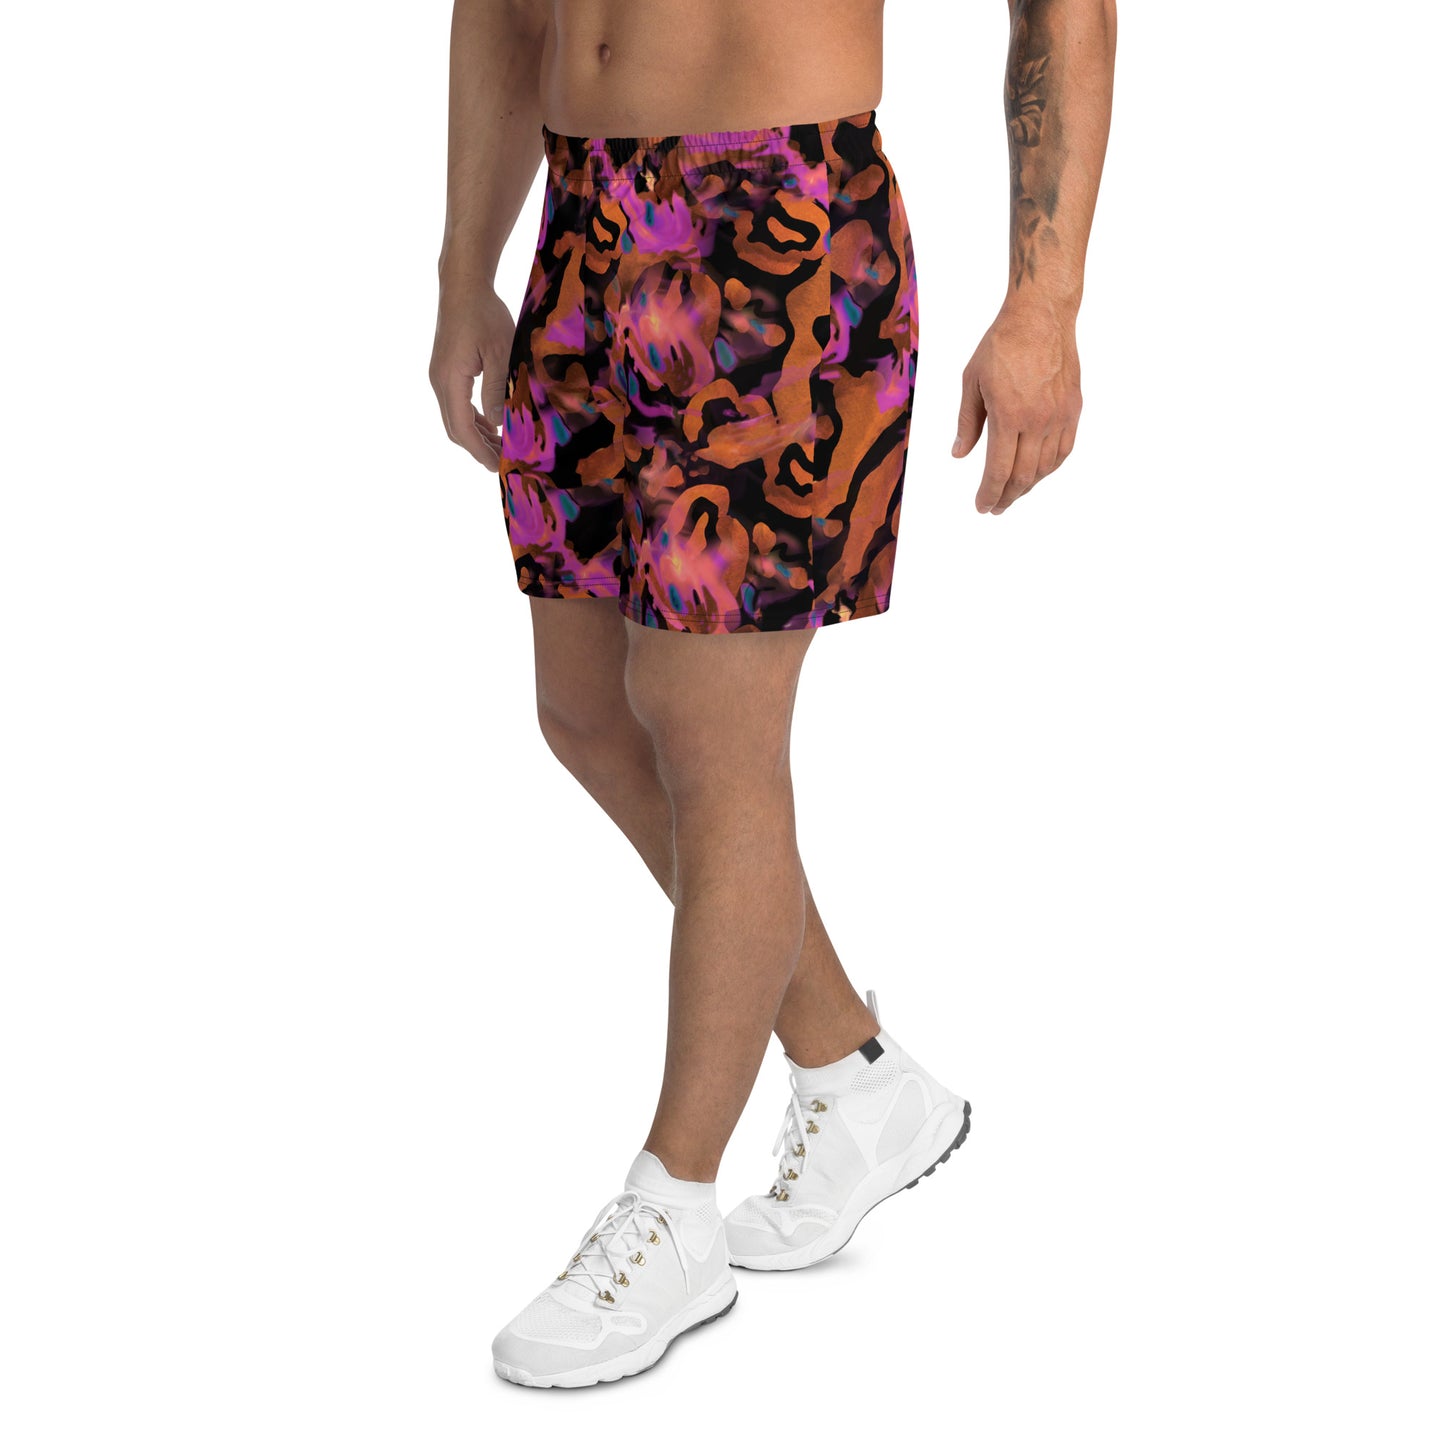 Men's Athletic Shorts - Watermelon Flavor